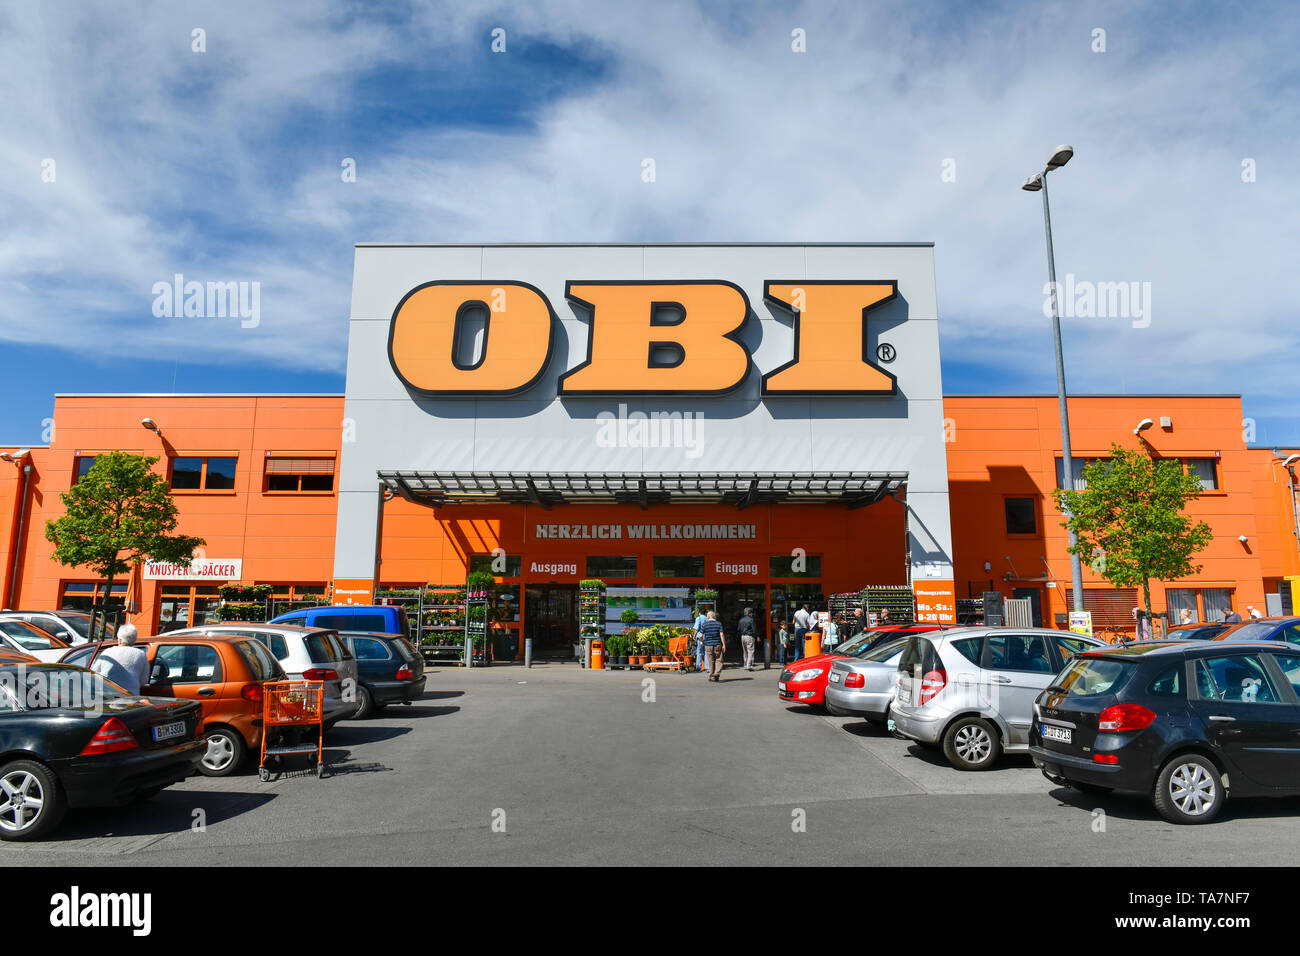 Obi market -Fotos und -Bildmaterial in hoher Auflösung – Alamy